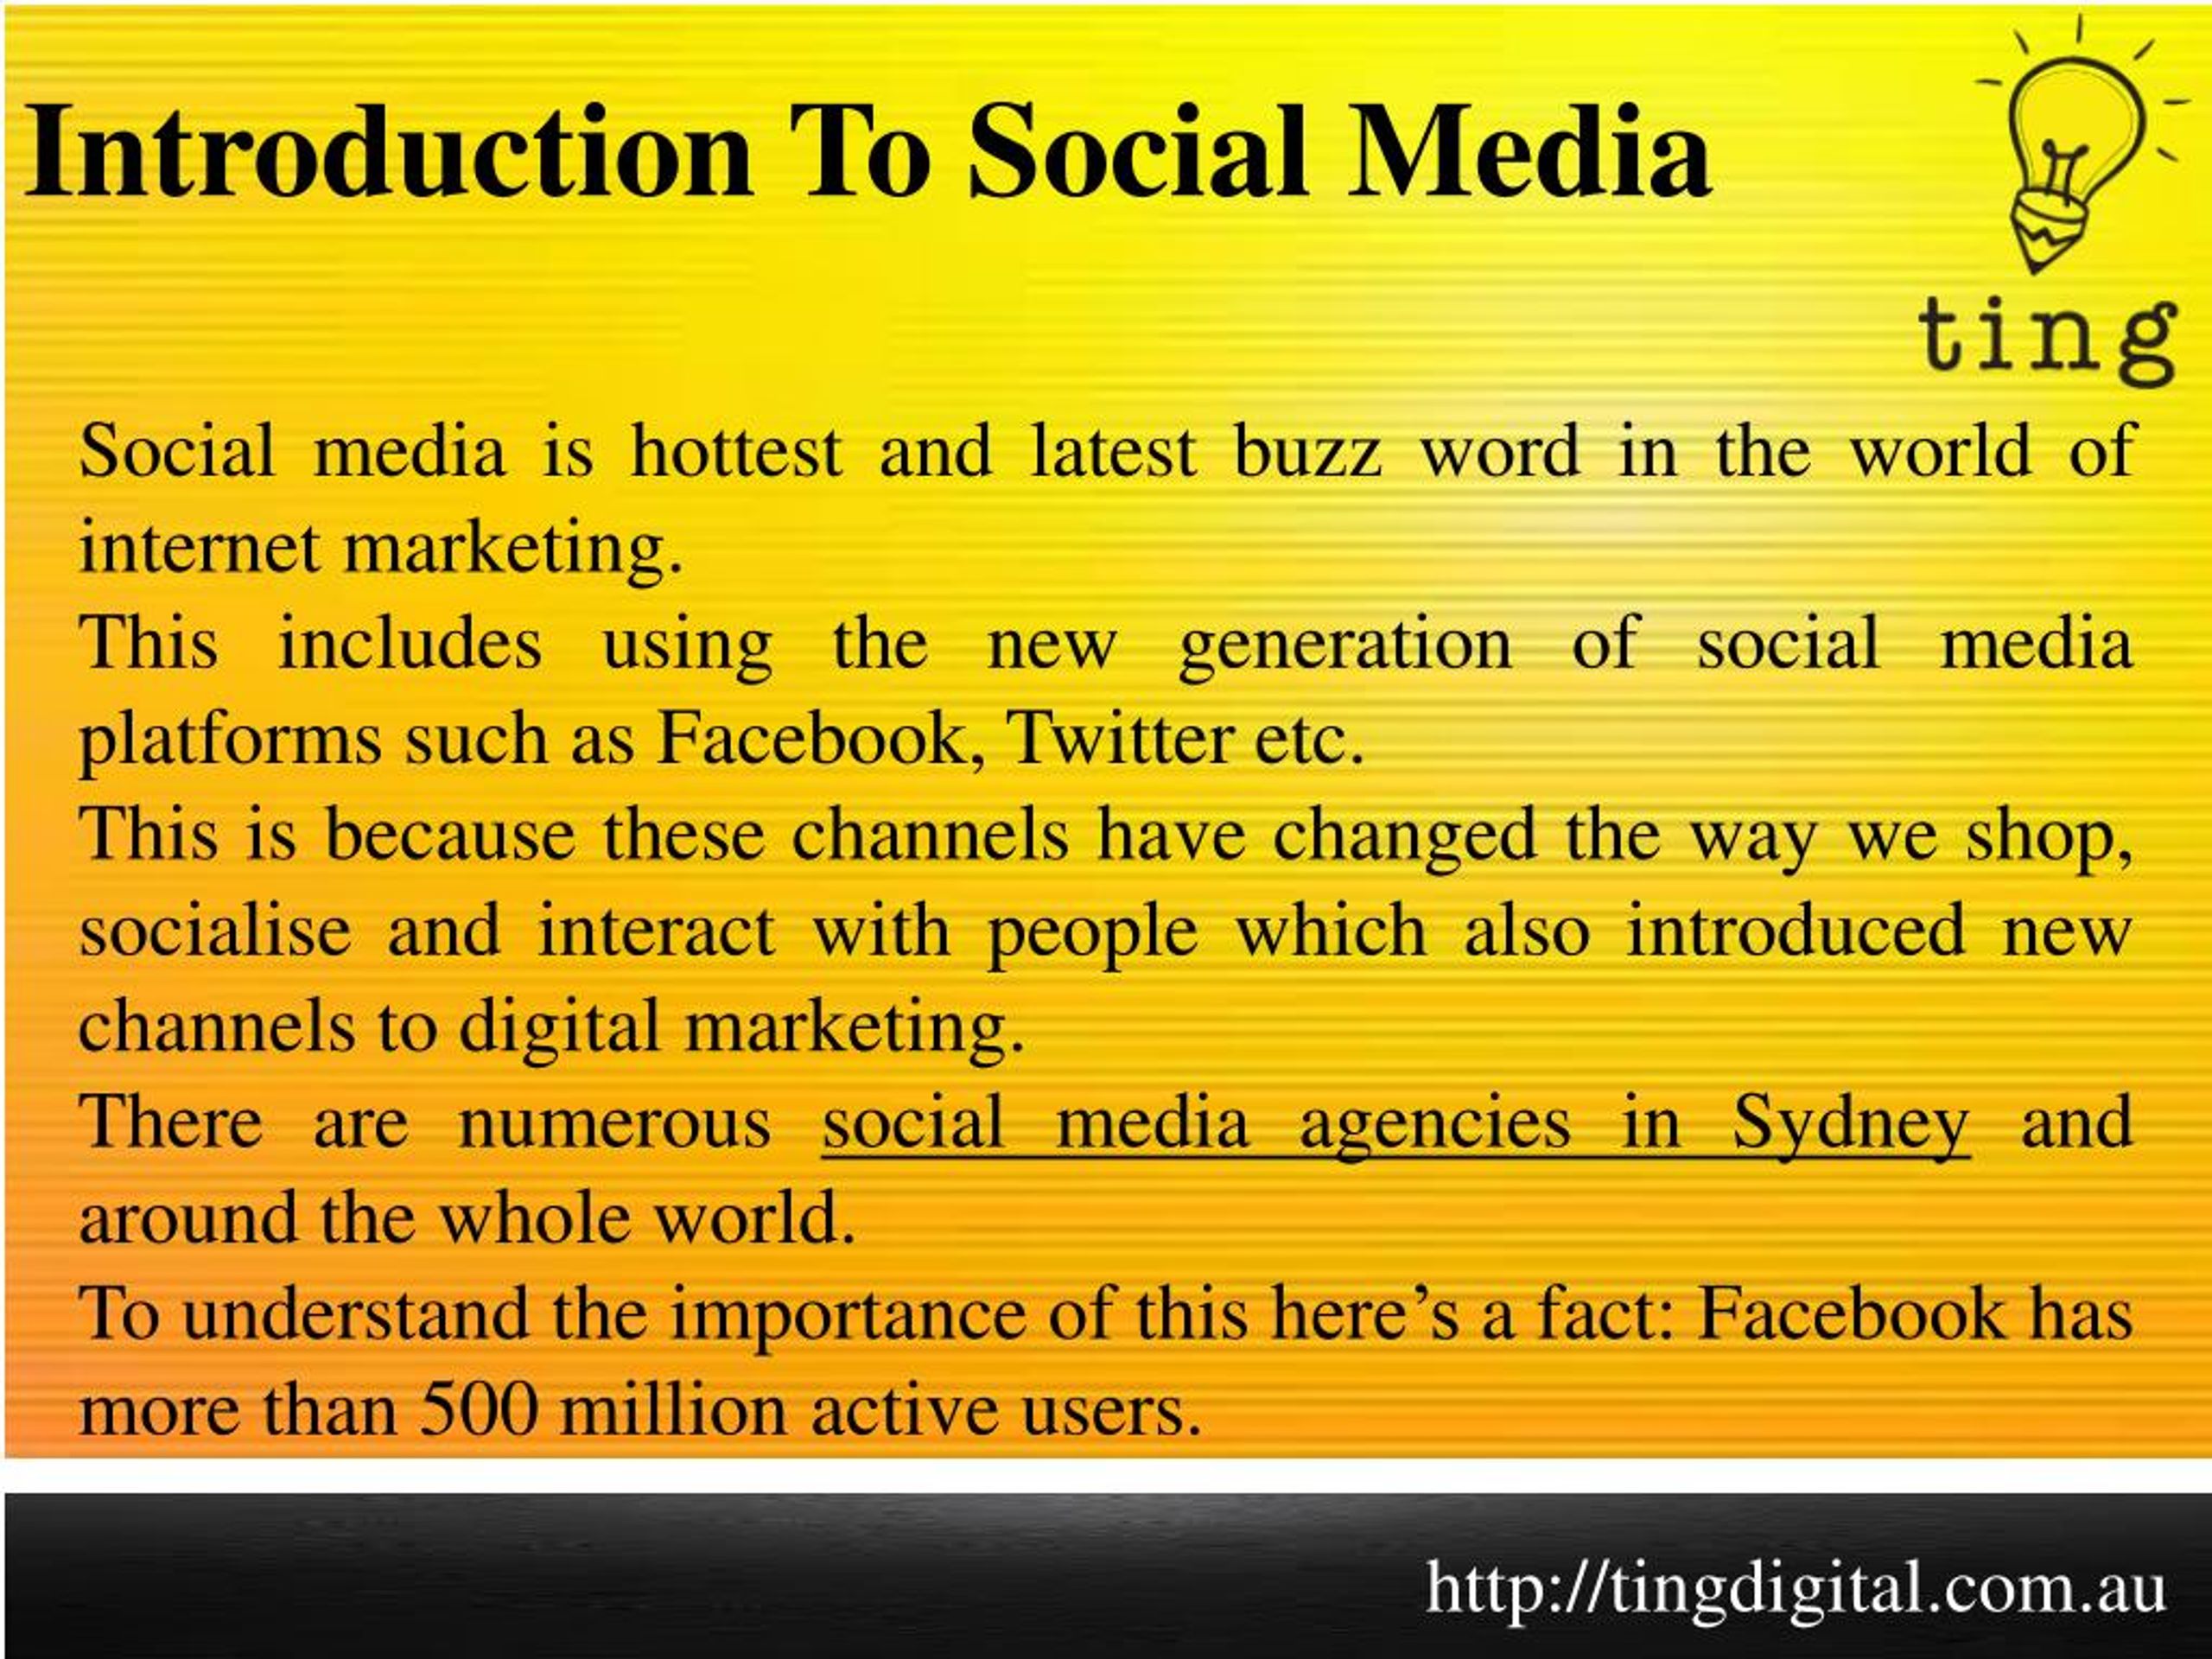 introduction of social media speech